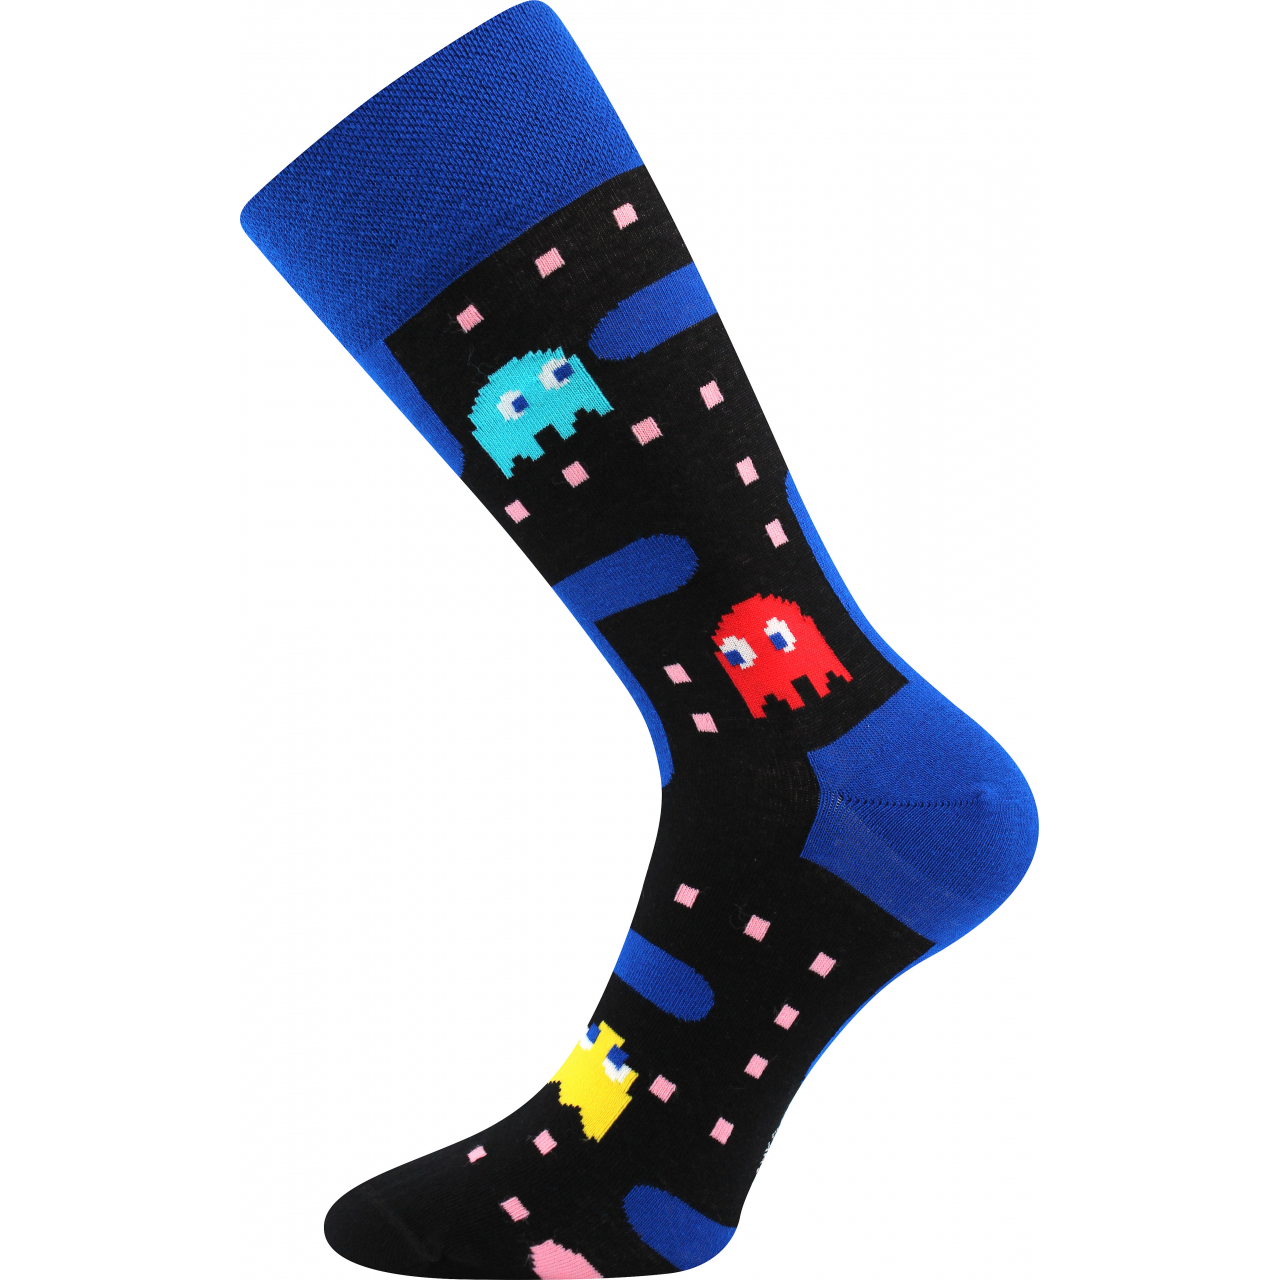 Ponožky společenské unisex Lonka Twidor Hra - modré-černé, 39-42